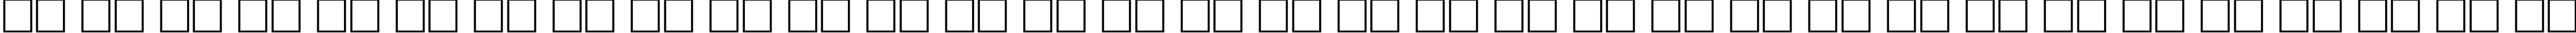 Пример написания русского алфавита шрифтом LugaExtra ExtraLight Oblique